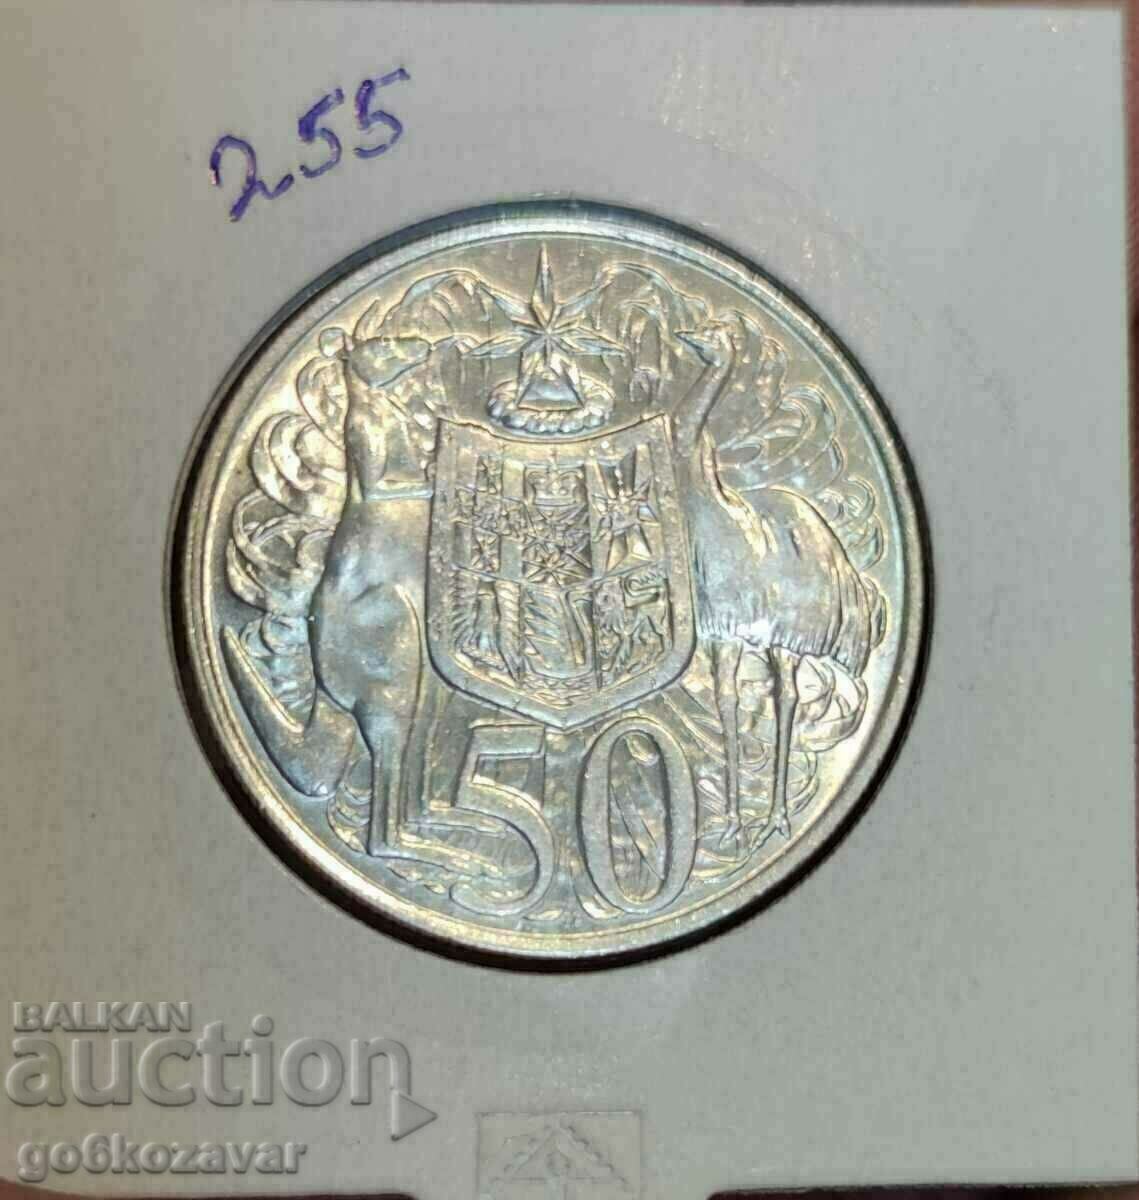 Australia 50 cents 1966 Silver!